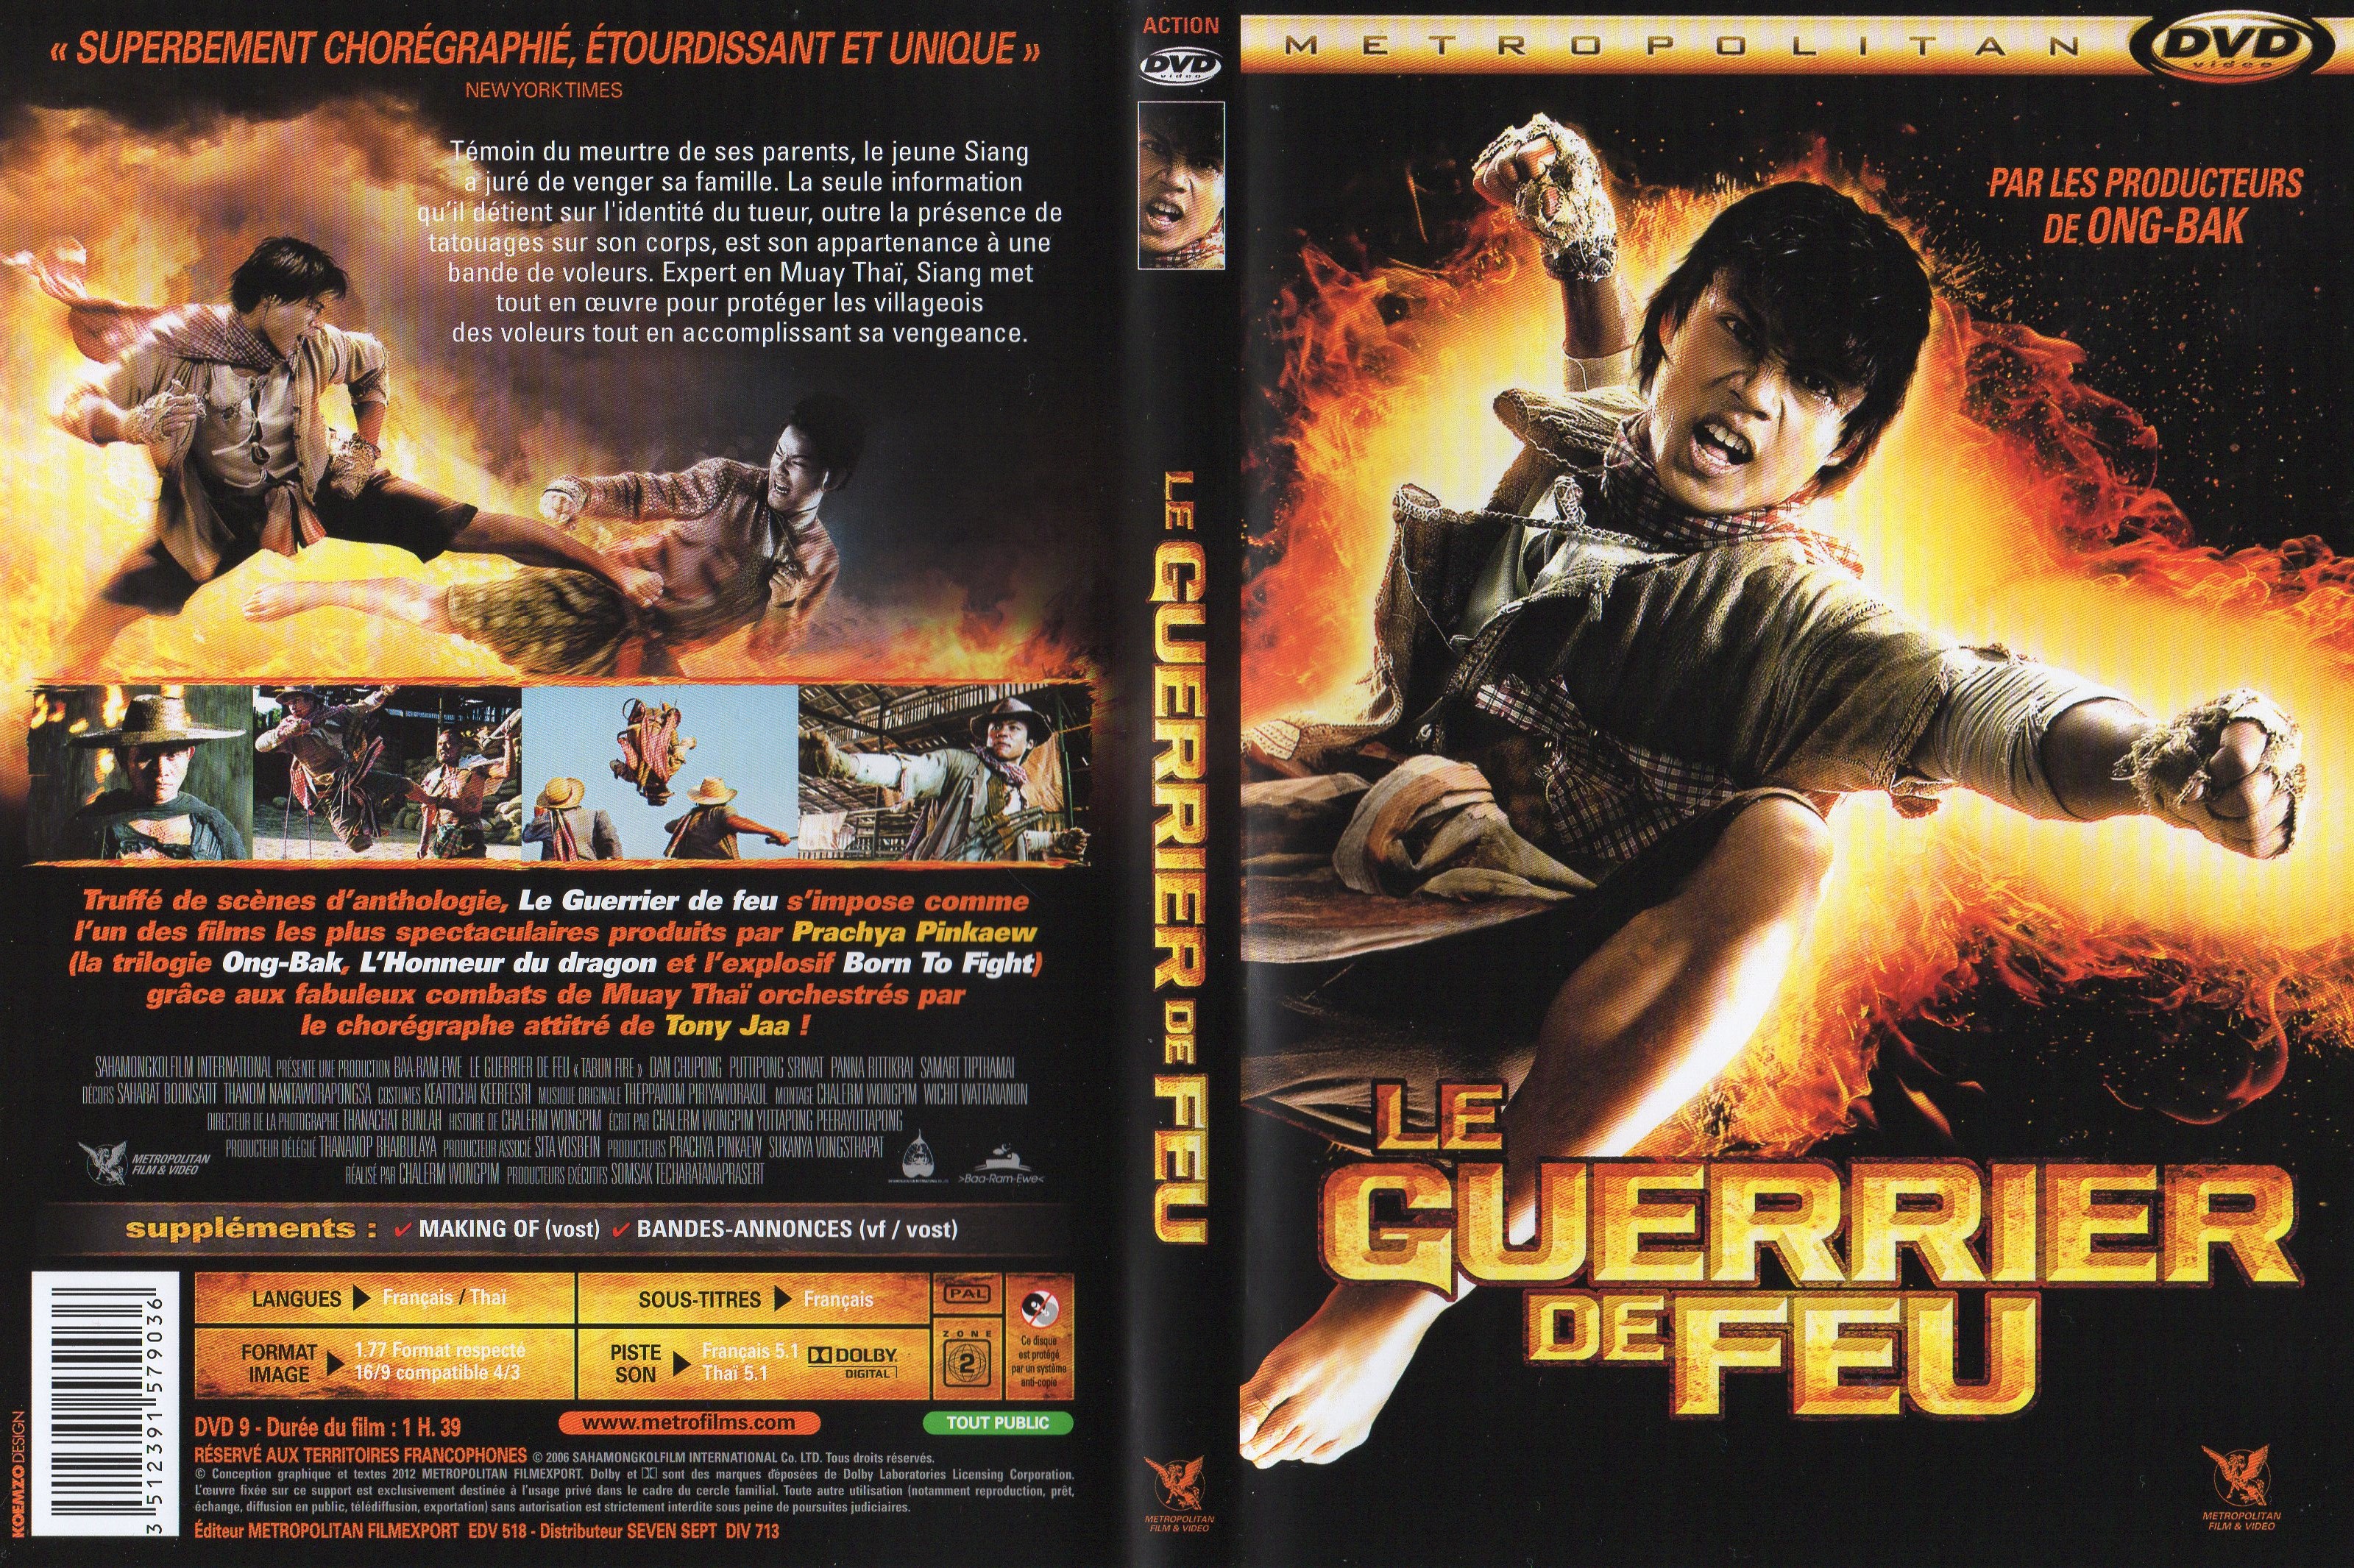 Jaquette DVD Le guerrier de feu